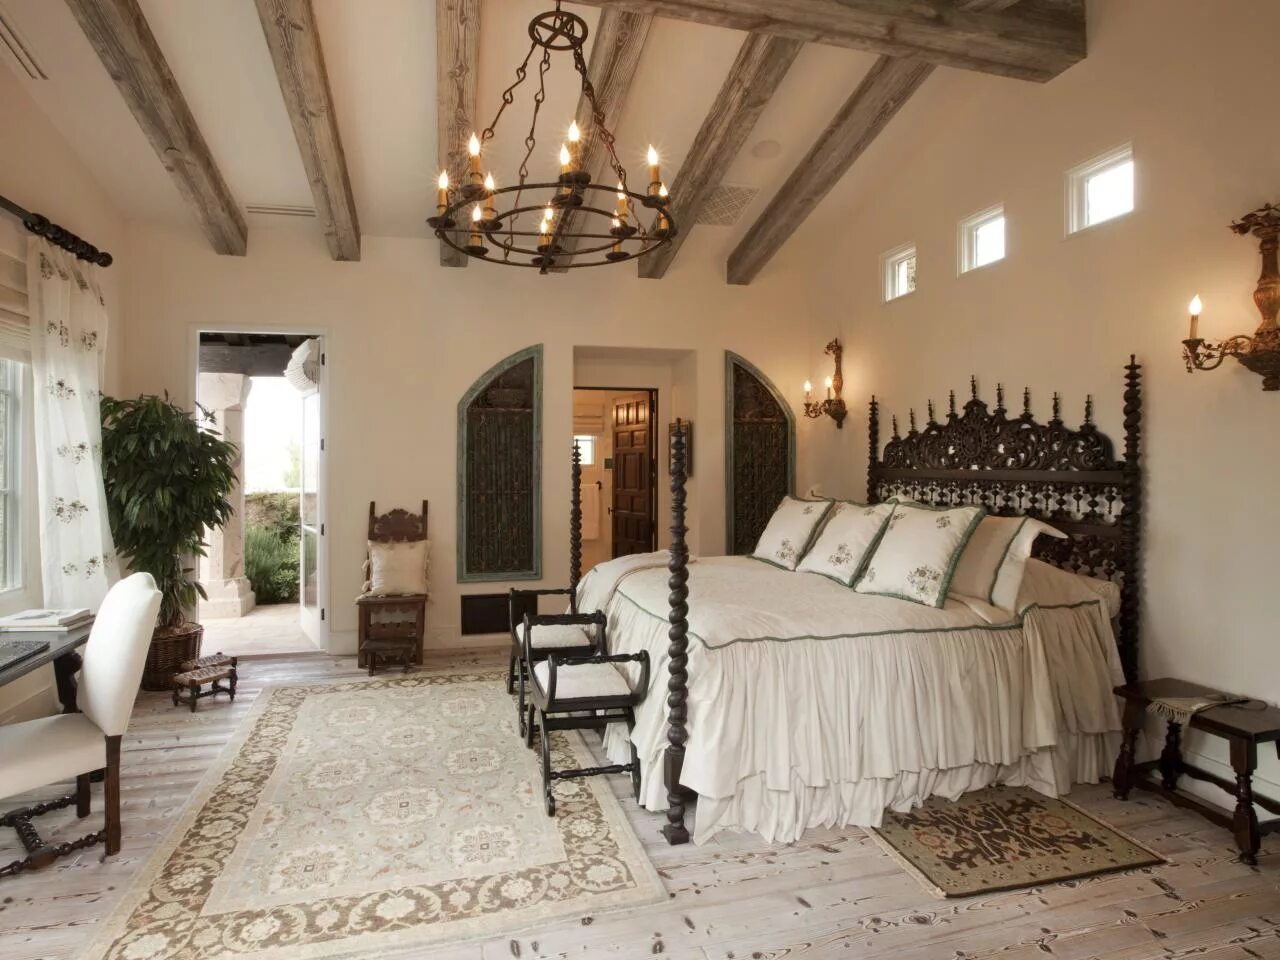 Old bedroom. Византийский романский стиль интерьер. Романкий Тиль интерьере. Итальянский стиль в интерьере. Спальня в итальянском стиле.